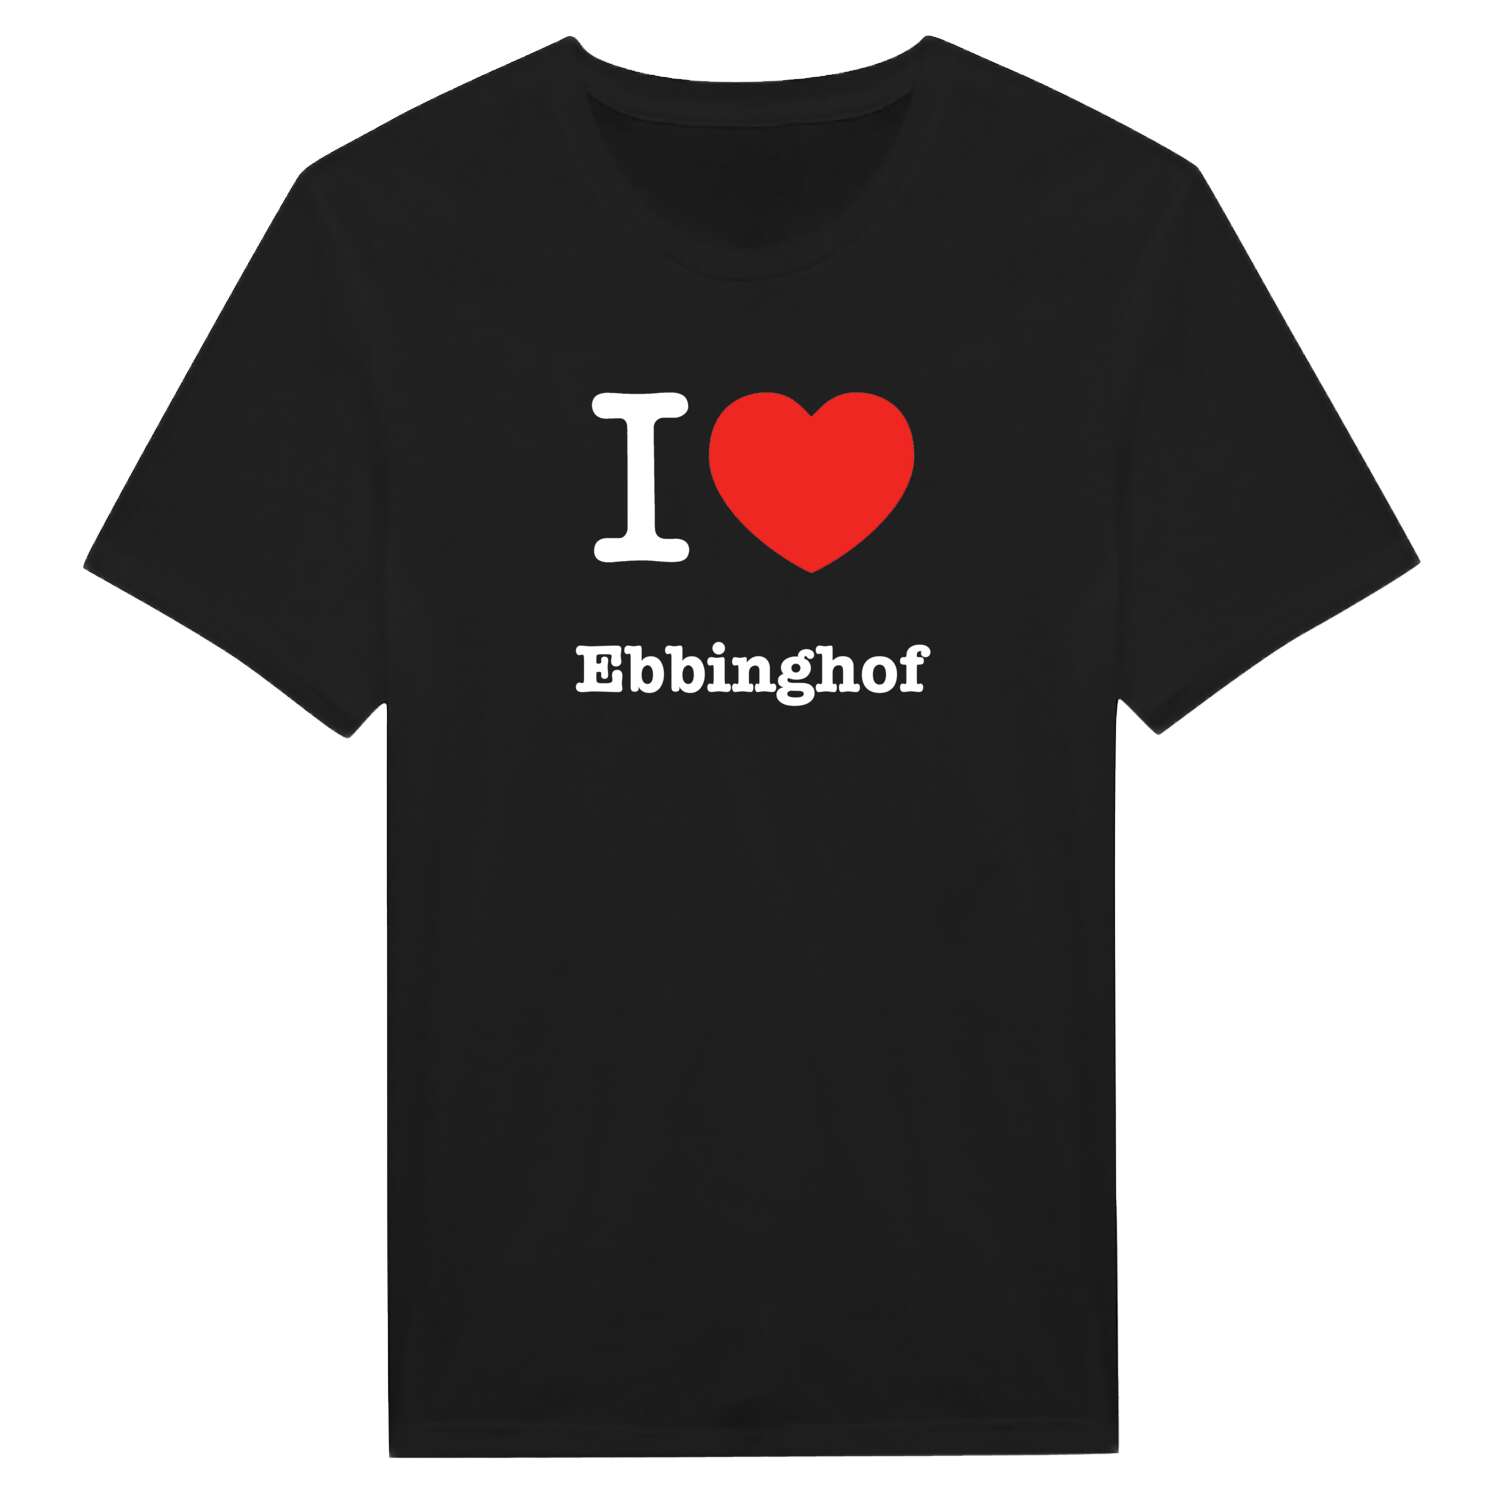 Ebbinghof T-Shirt »I love«